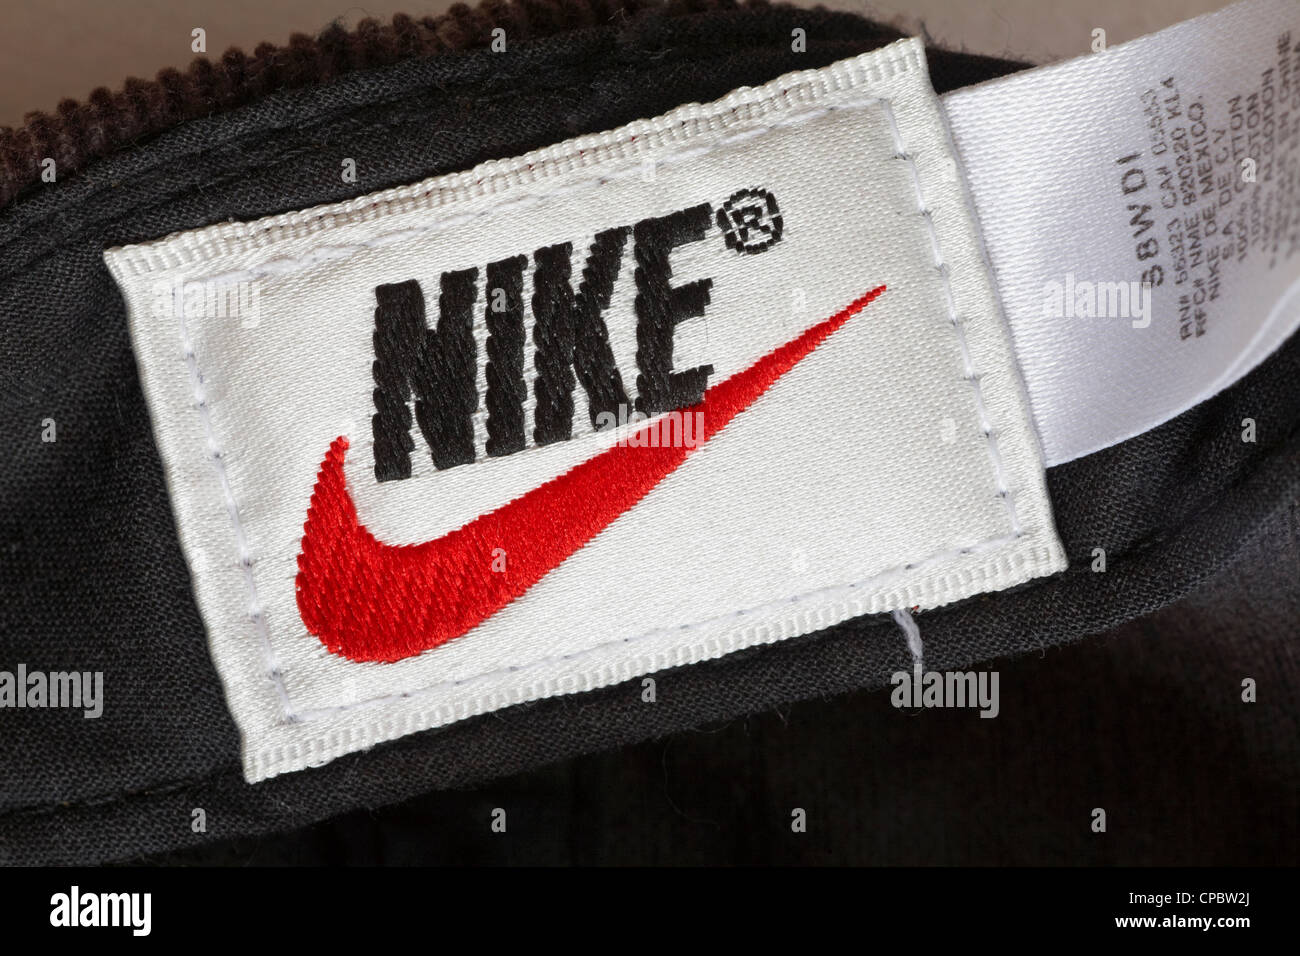 Nike imágenes de alta resolución - Alamy